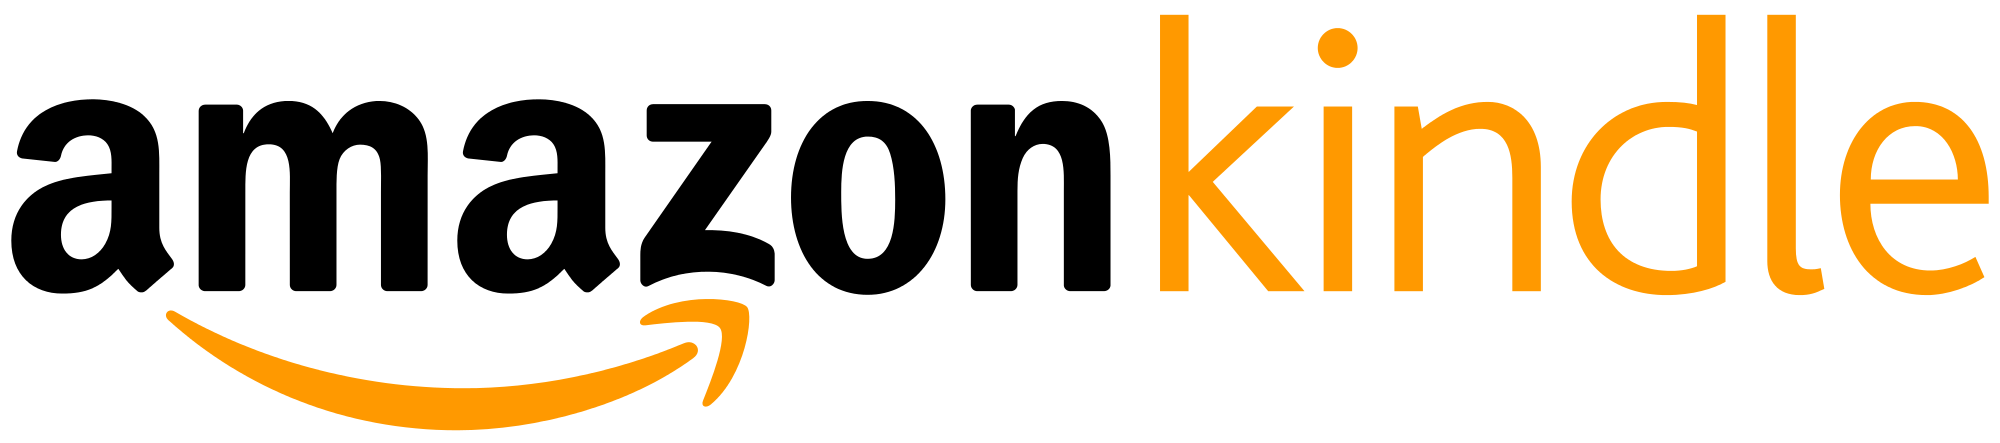 Amazon Kindle Logo Vector PNG